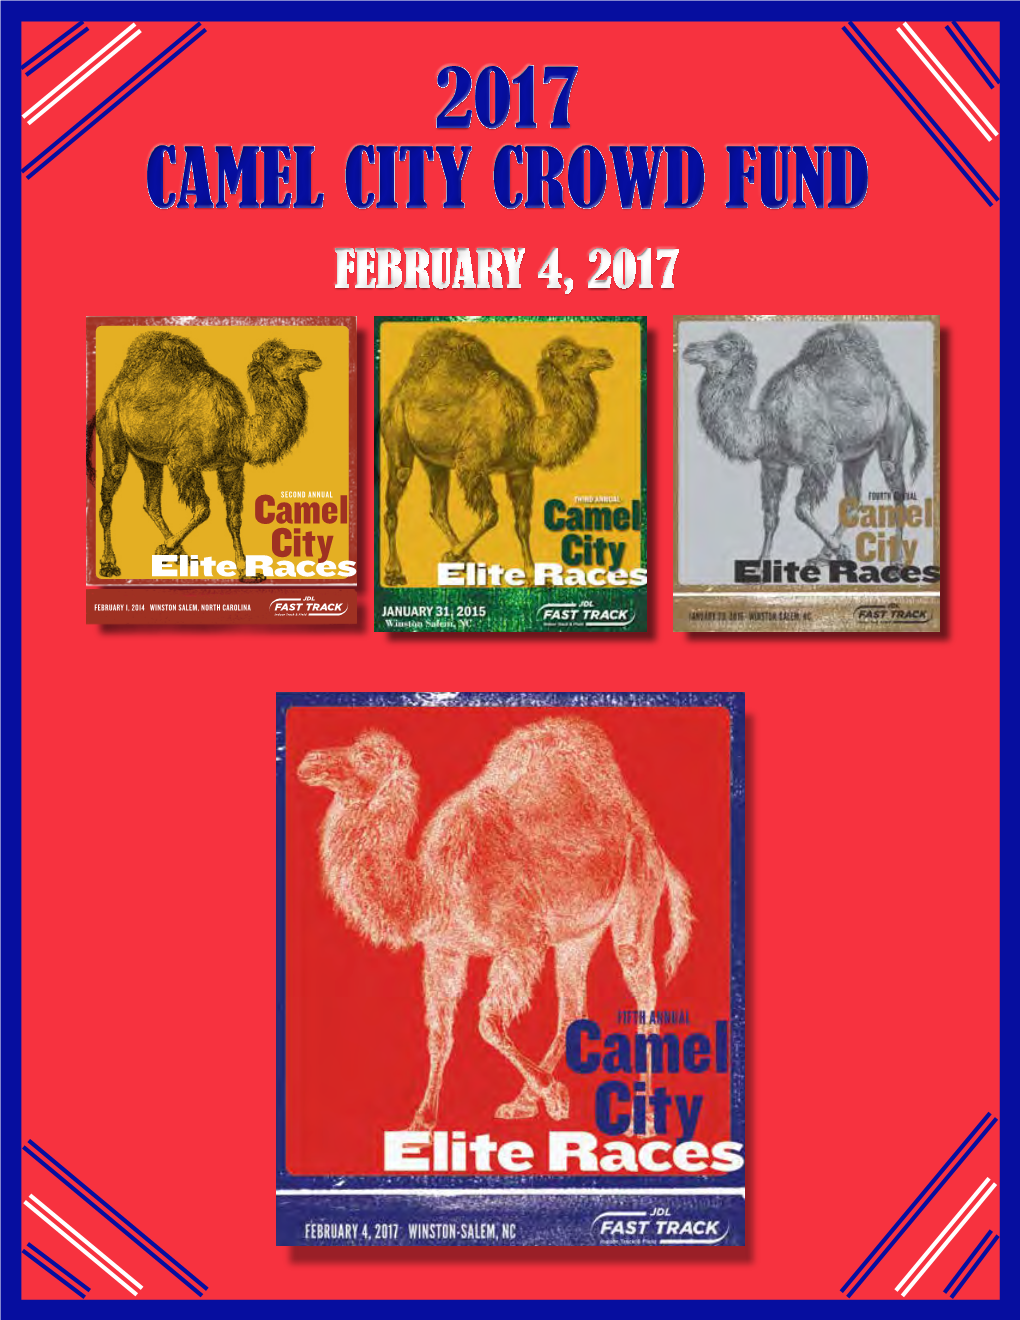 2017 Camel City Crowd Fund 2017 Camel City Crowd Fund